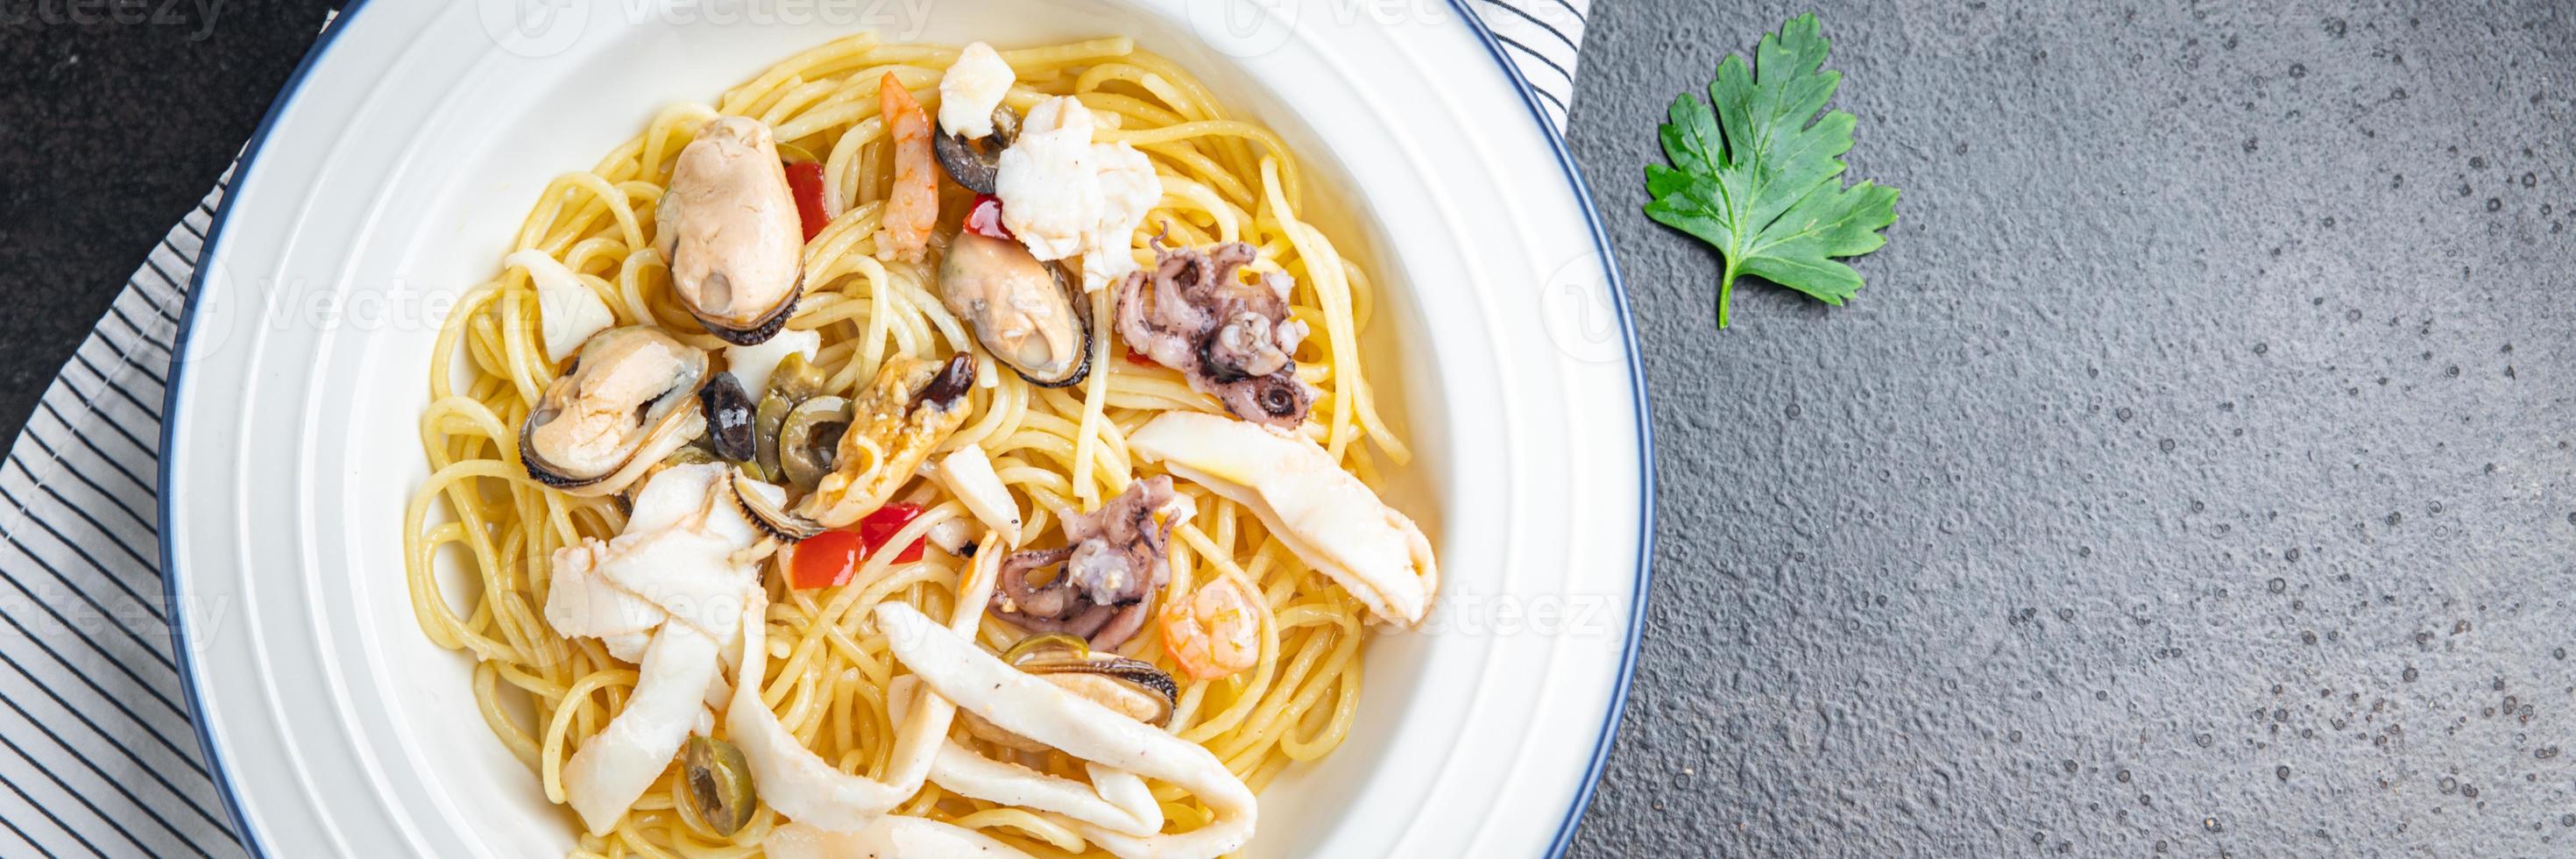 pasta mariscos espaguetis saludable comida foto